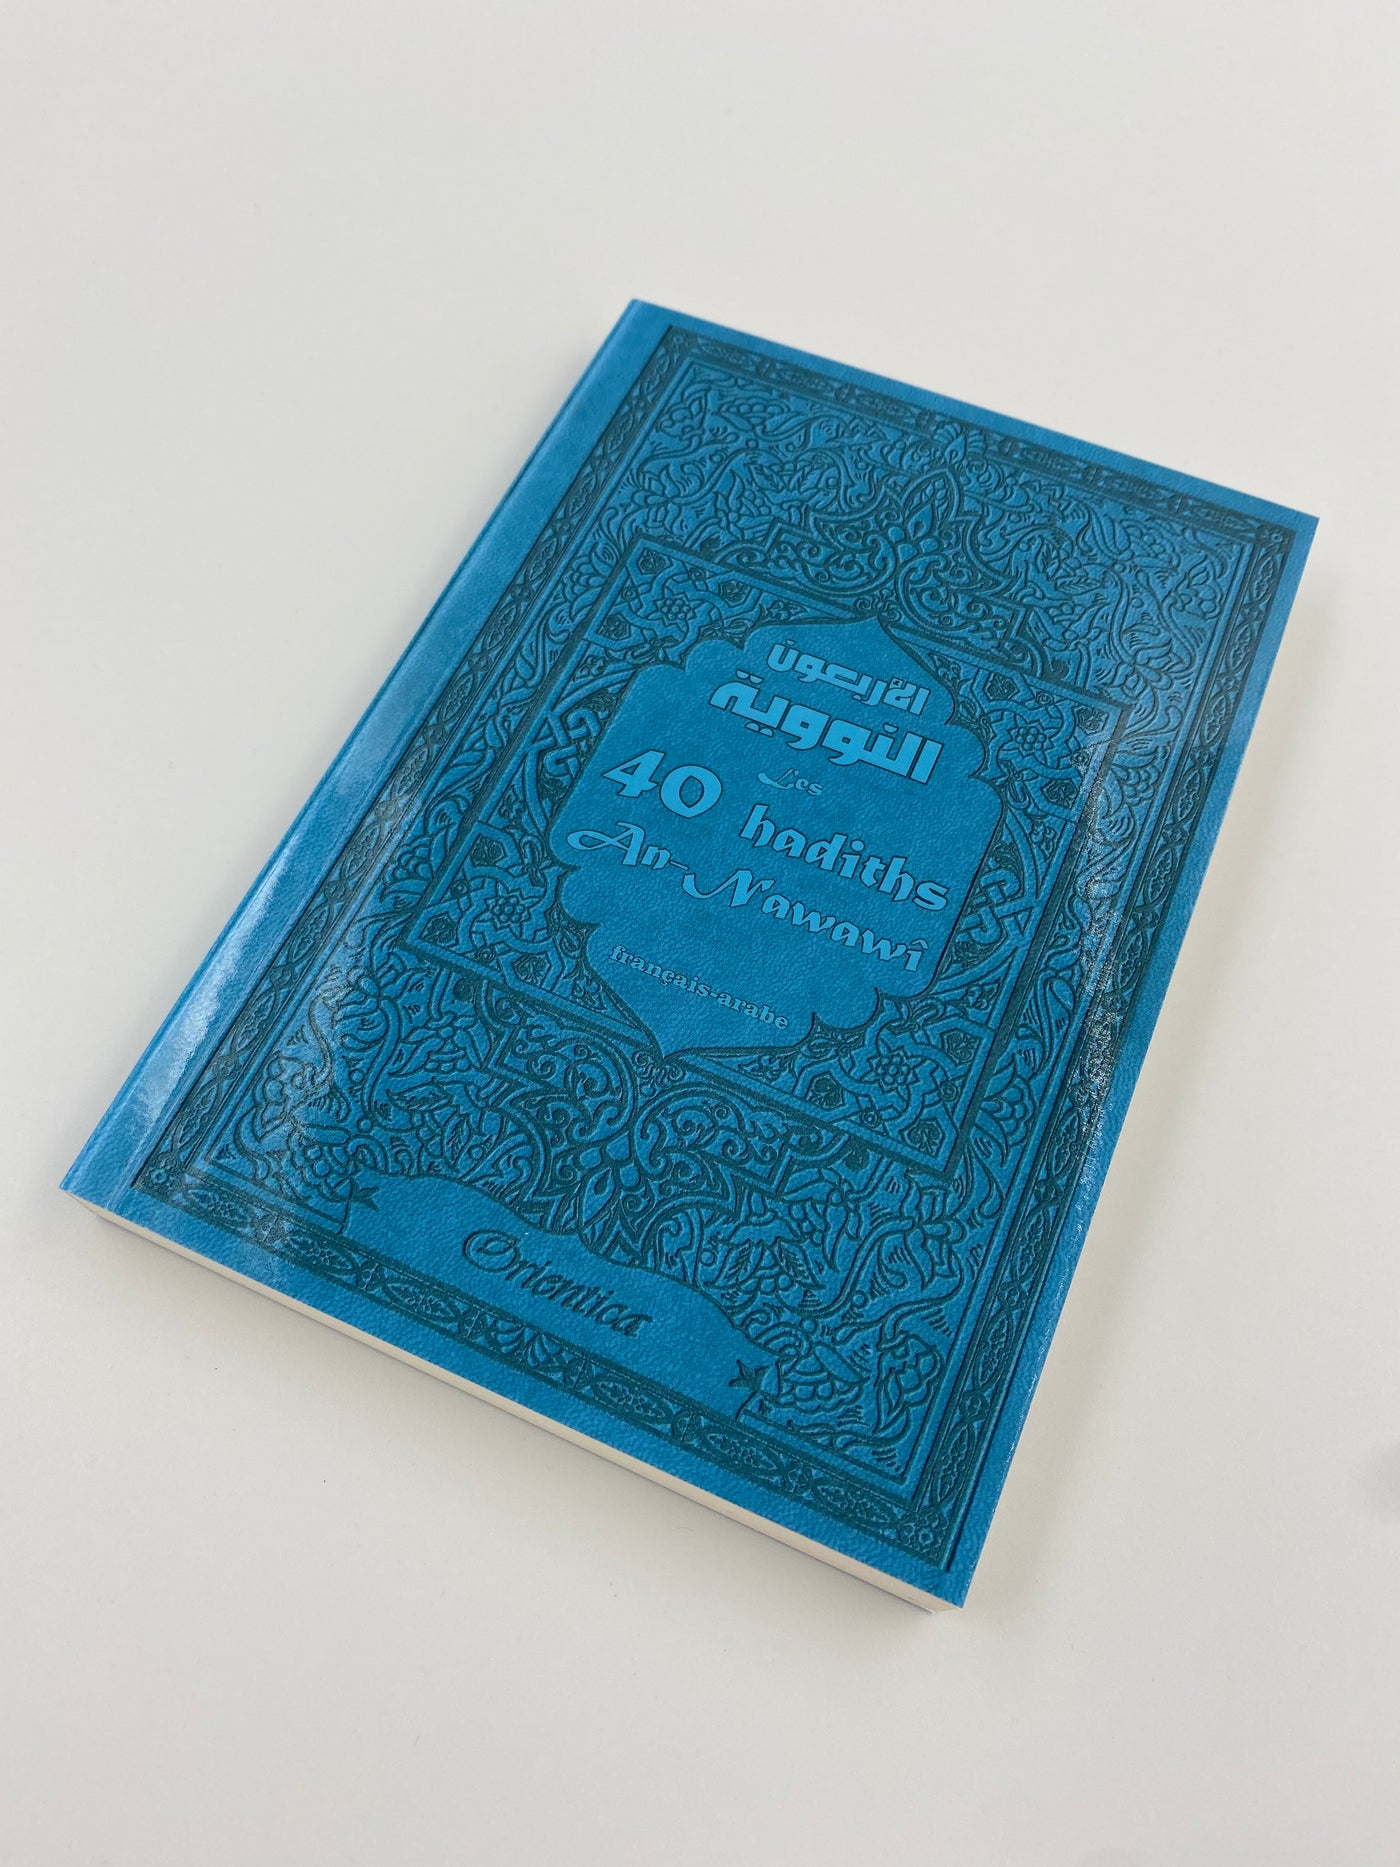 Die 40 An-Nawawî-Hadith (Blau)